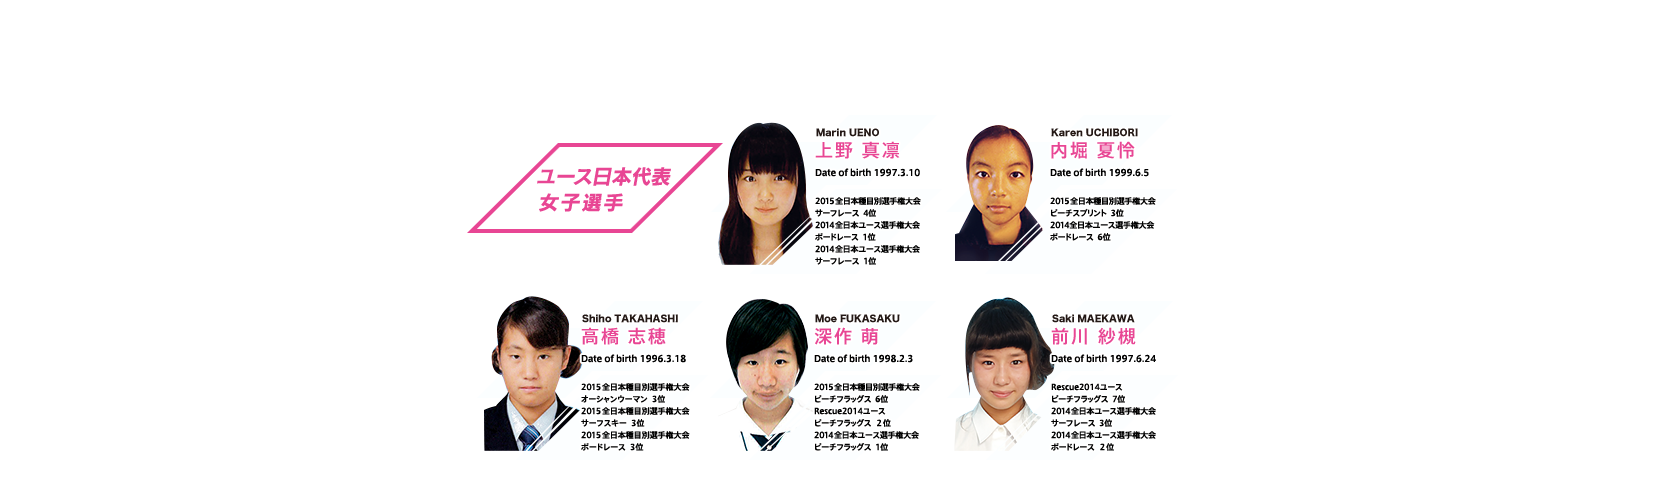 ユース日本代表女子選手